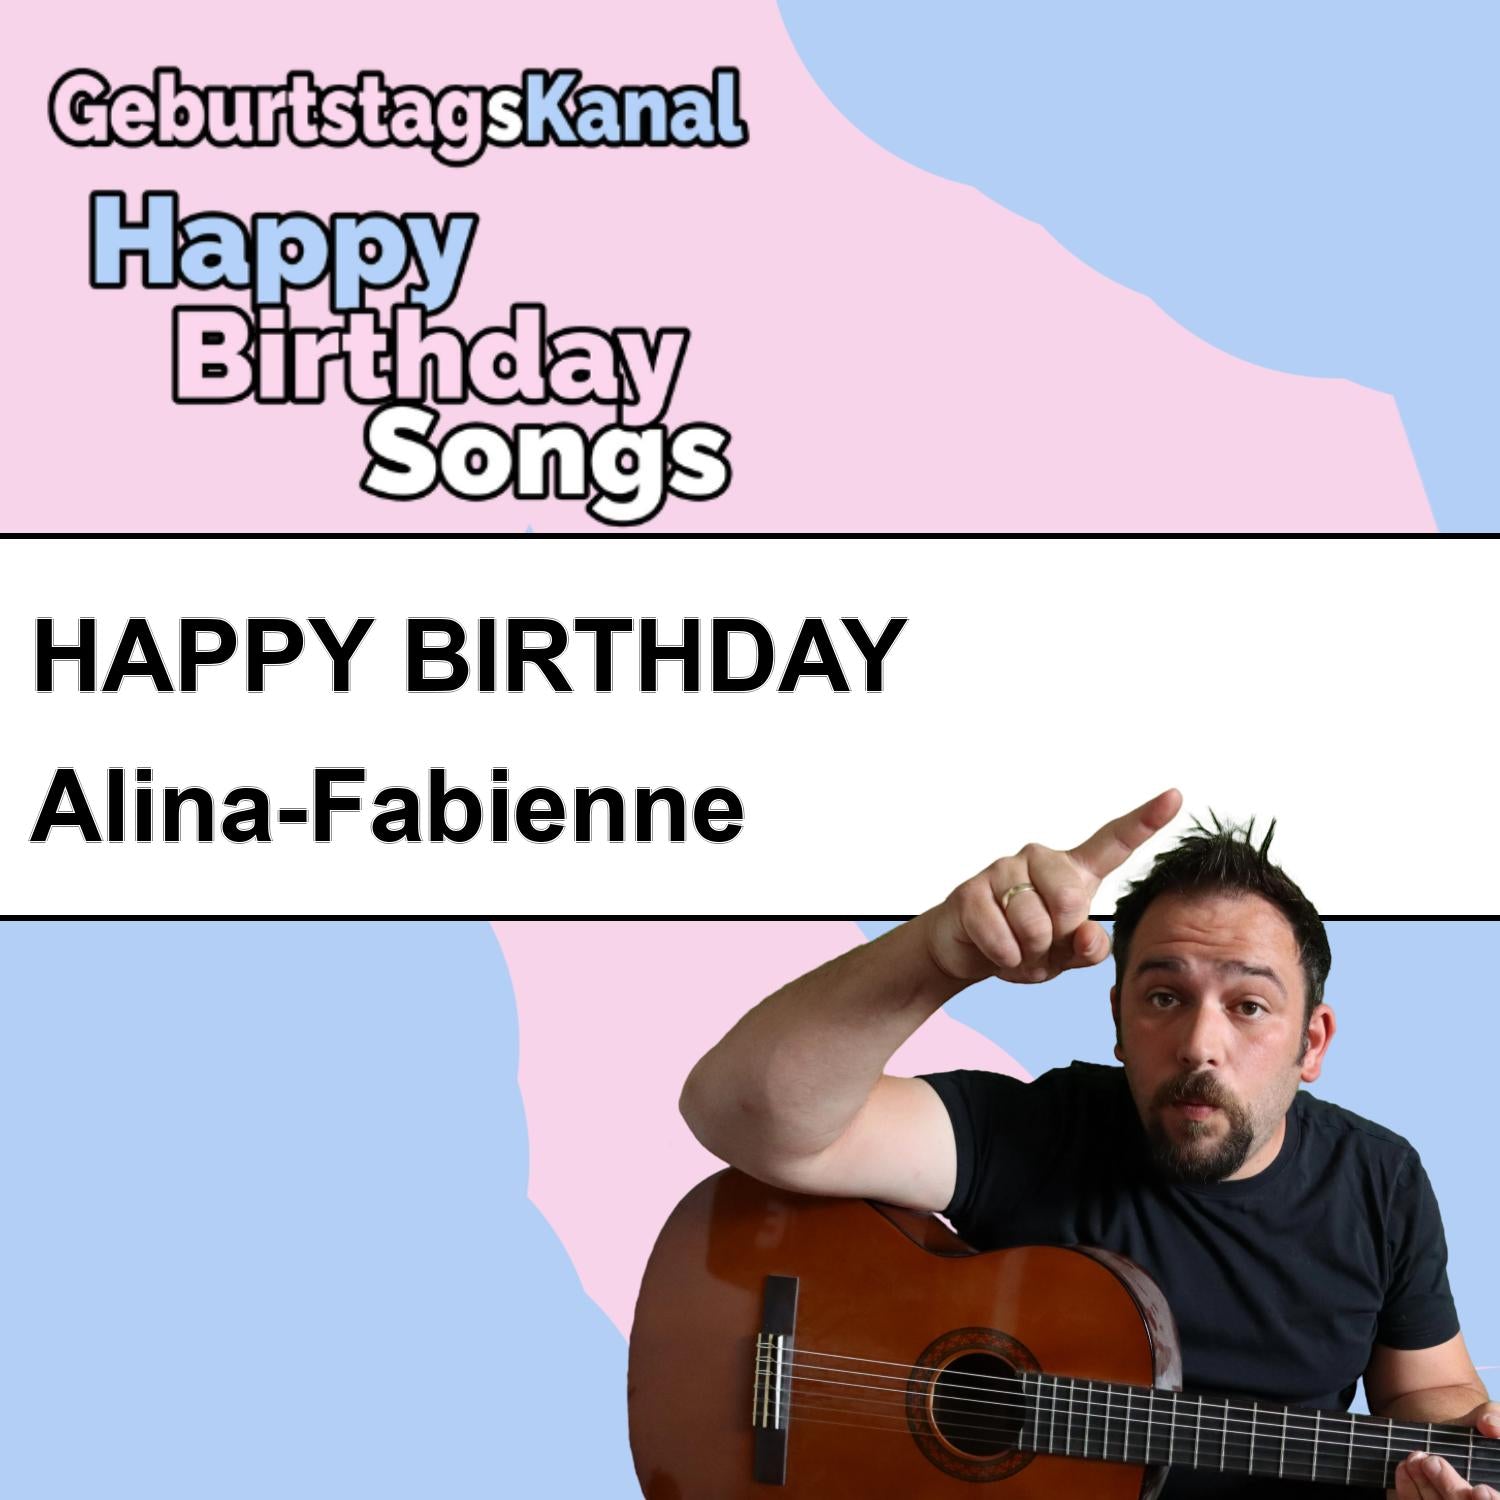 Produktbild Happy Birthday to you Alina-Fabienne mit Wunschgrußbotschaft